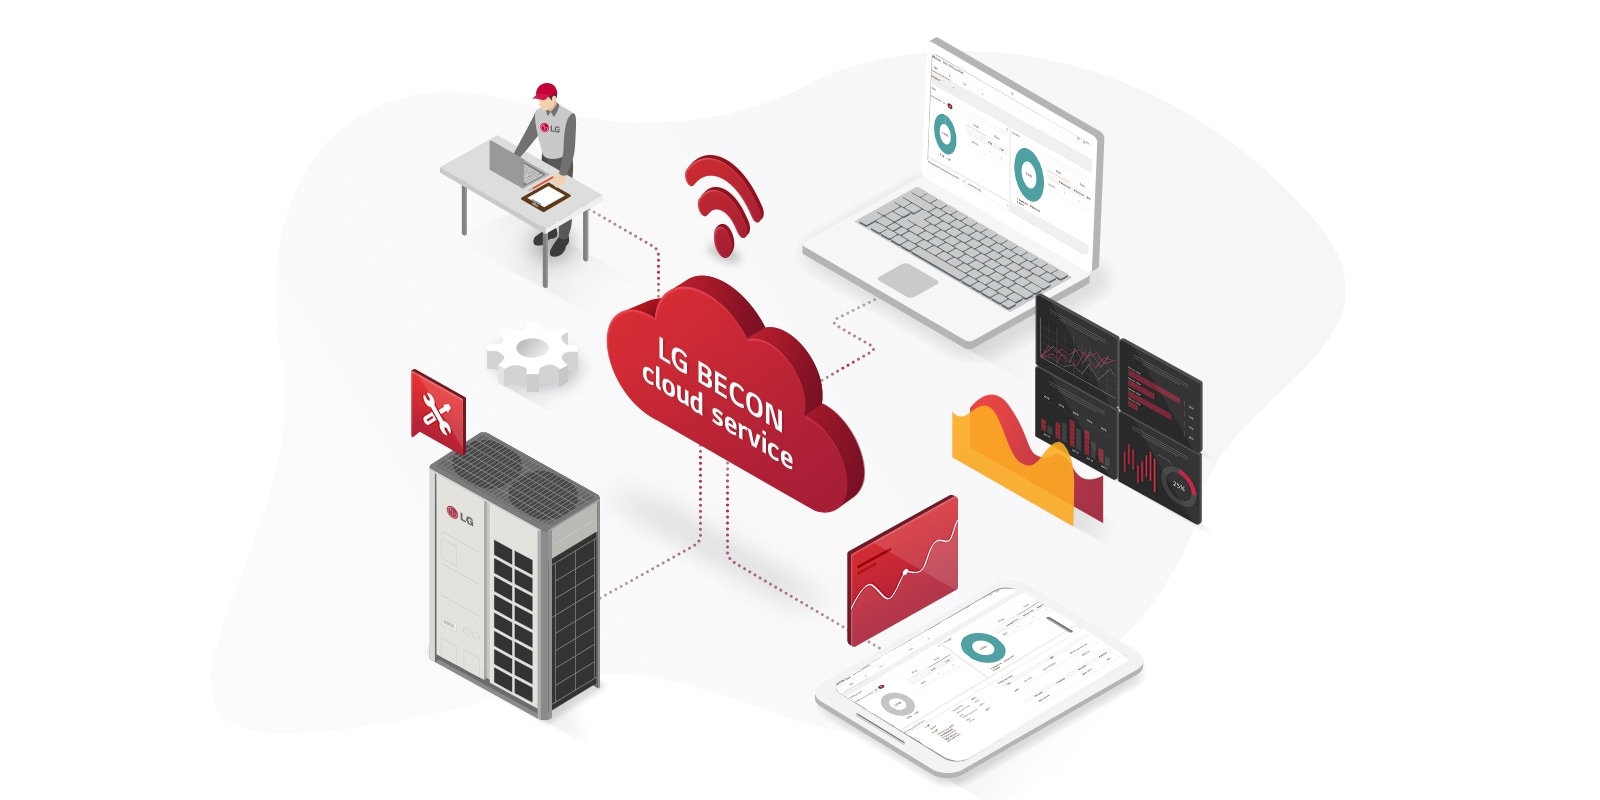 واجهات LG BECON Connect API وخدمة الطرف الثالث المتصلة بالخطوط الرمادية تتبادل البيانات عبر الأجهزة التجارية والسكنية، وتندمج في المستخدمين النهائيين.